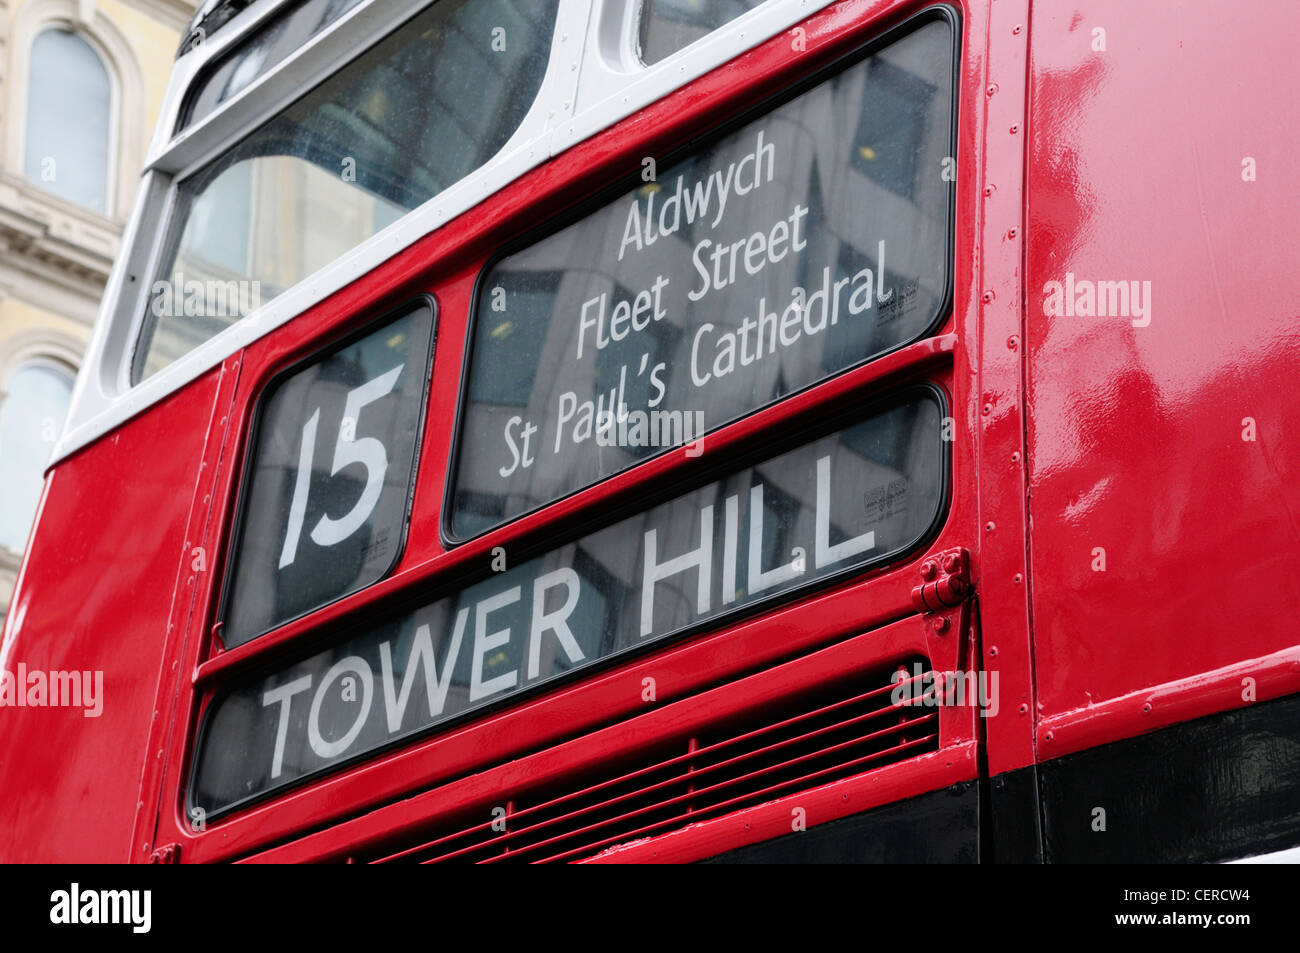 Ein Londoner Routemaster Bus auf Geschichtsroute 15 zwischen Trafalgar Square und Tower Hill. Stockfoto